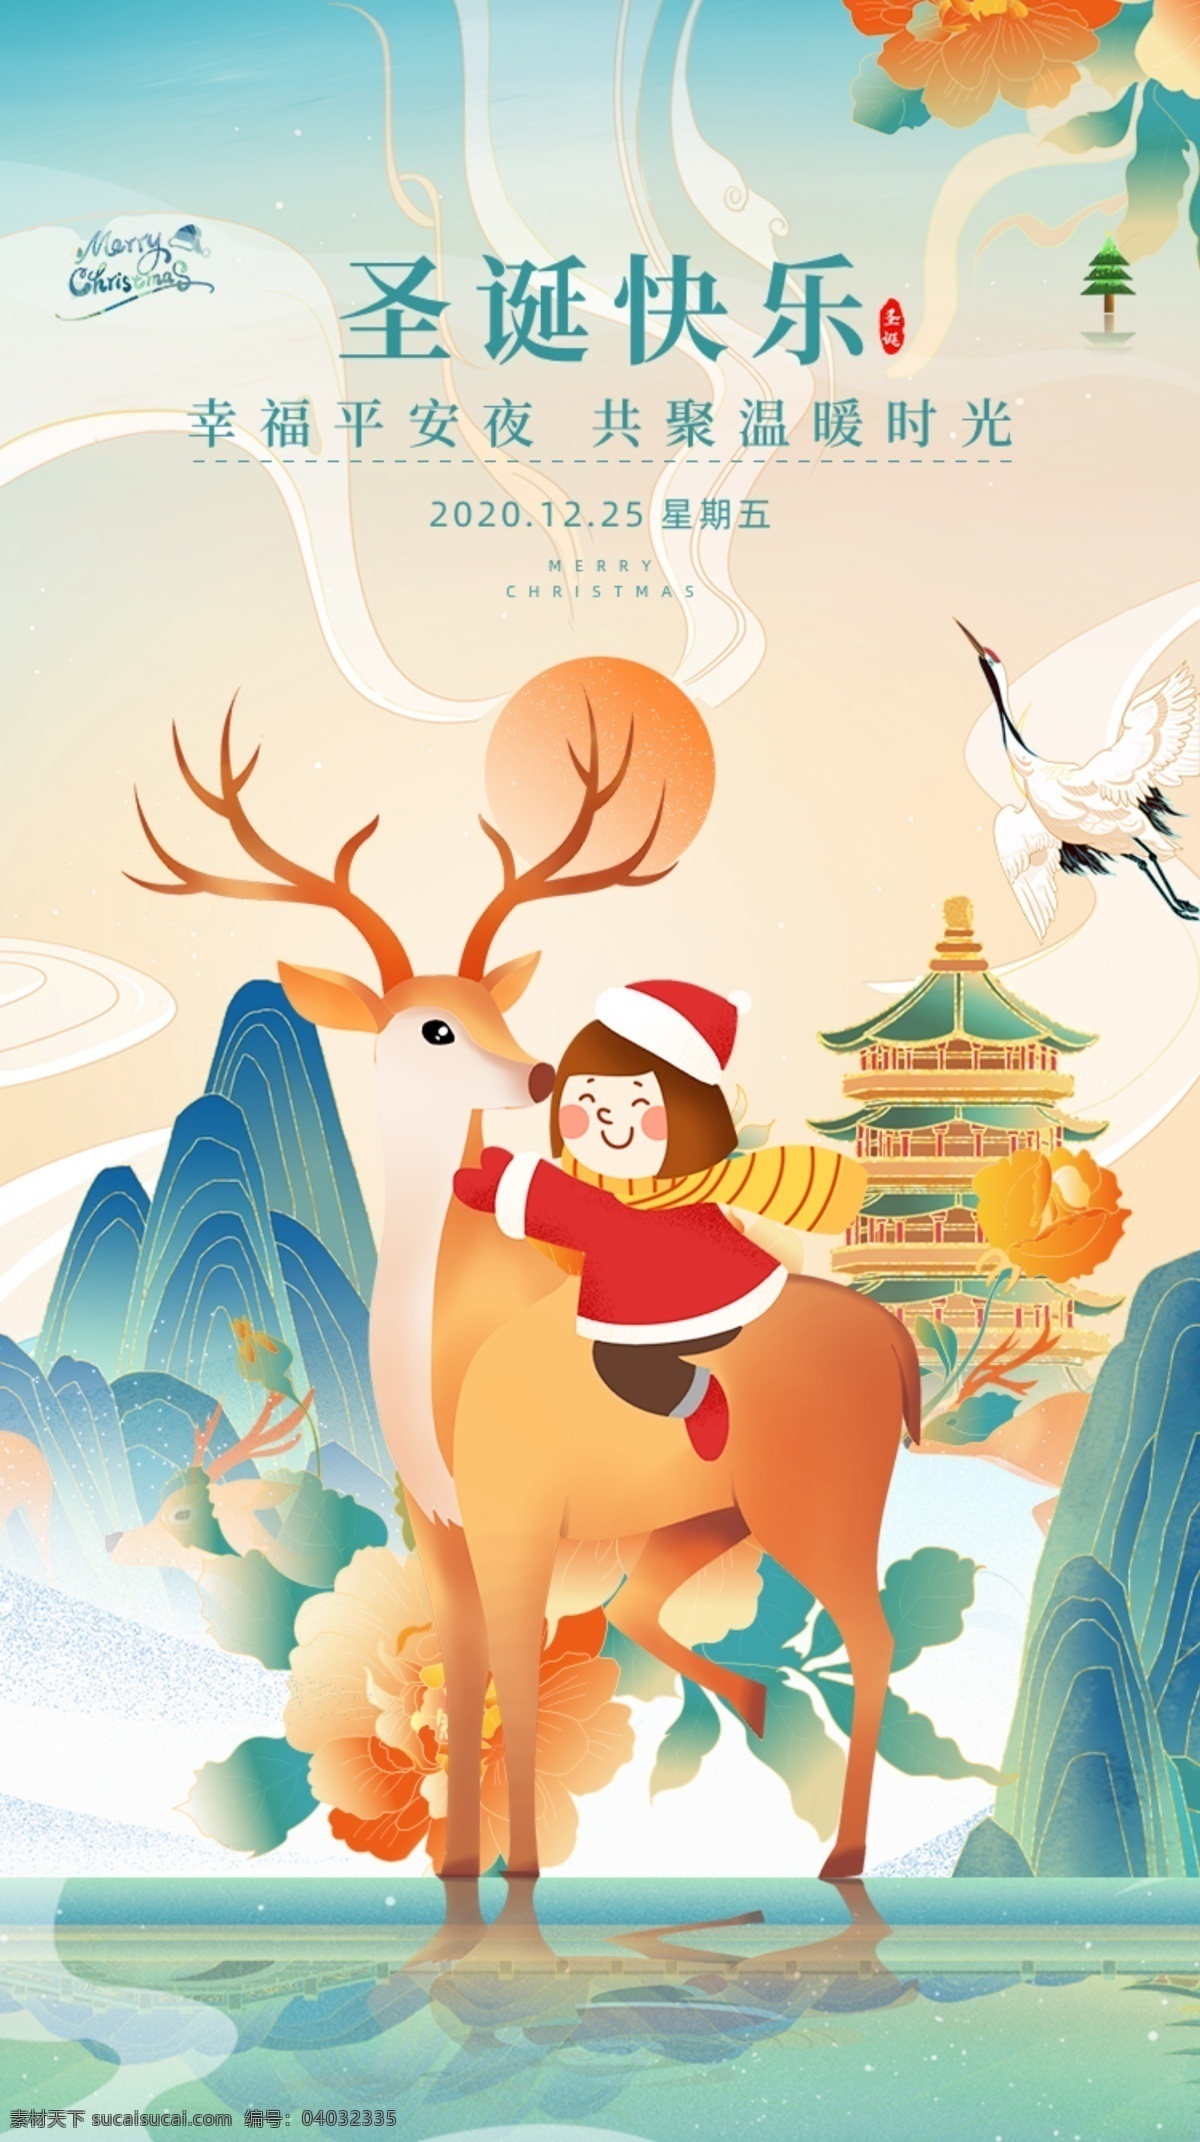 中国 风 鎏金 创意 西方 传统节日 圣诞 中国风 圣诞节 海报 h5 vi设计